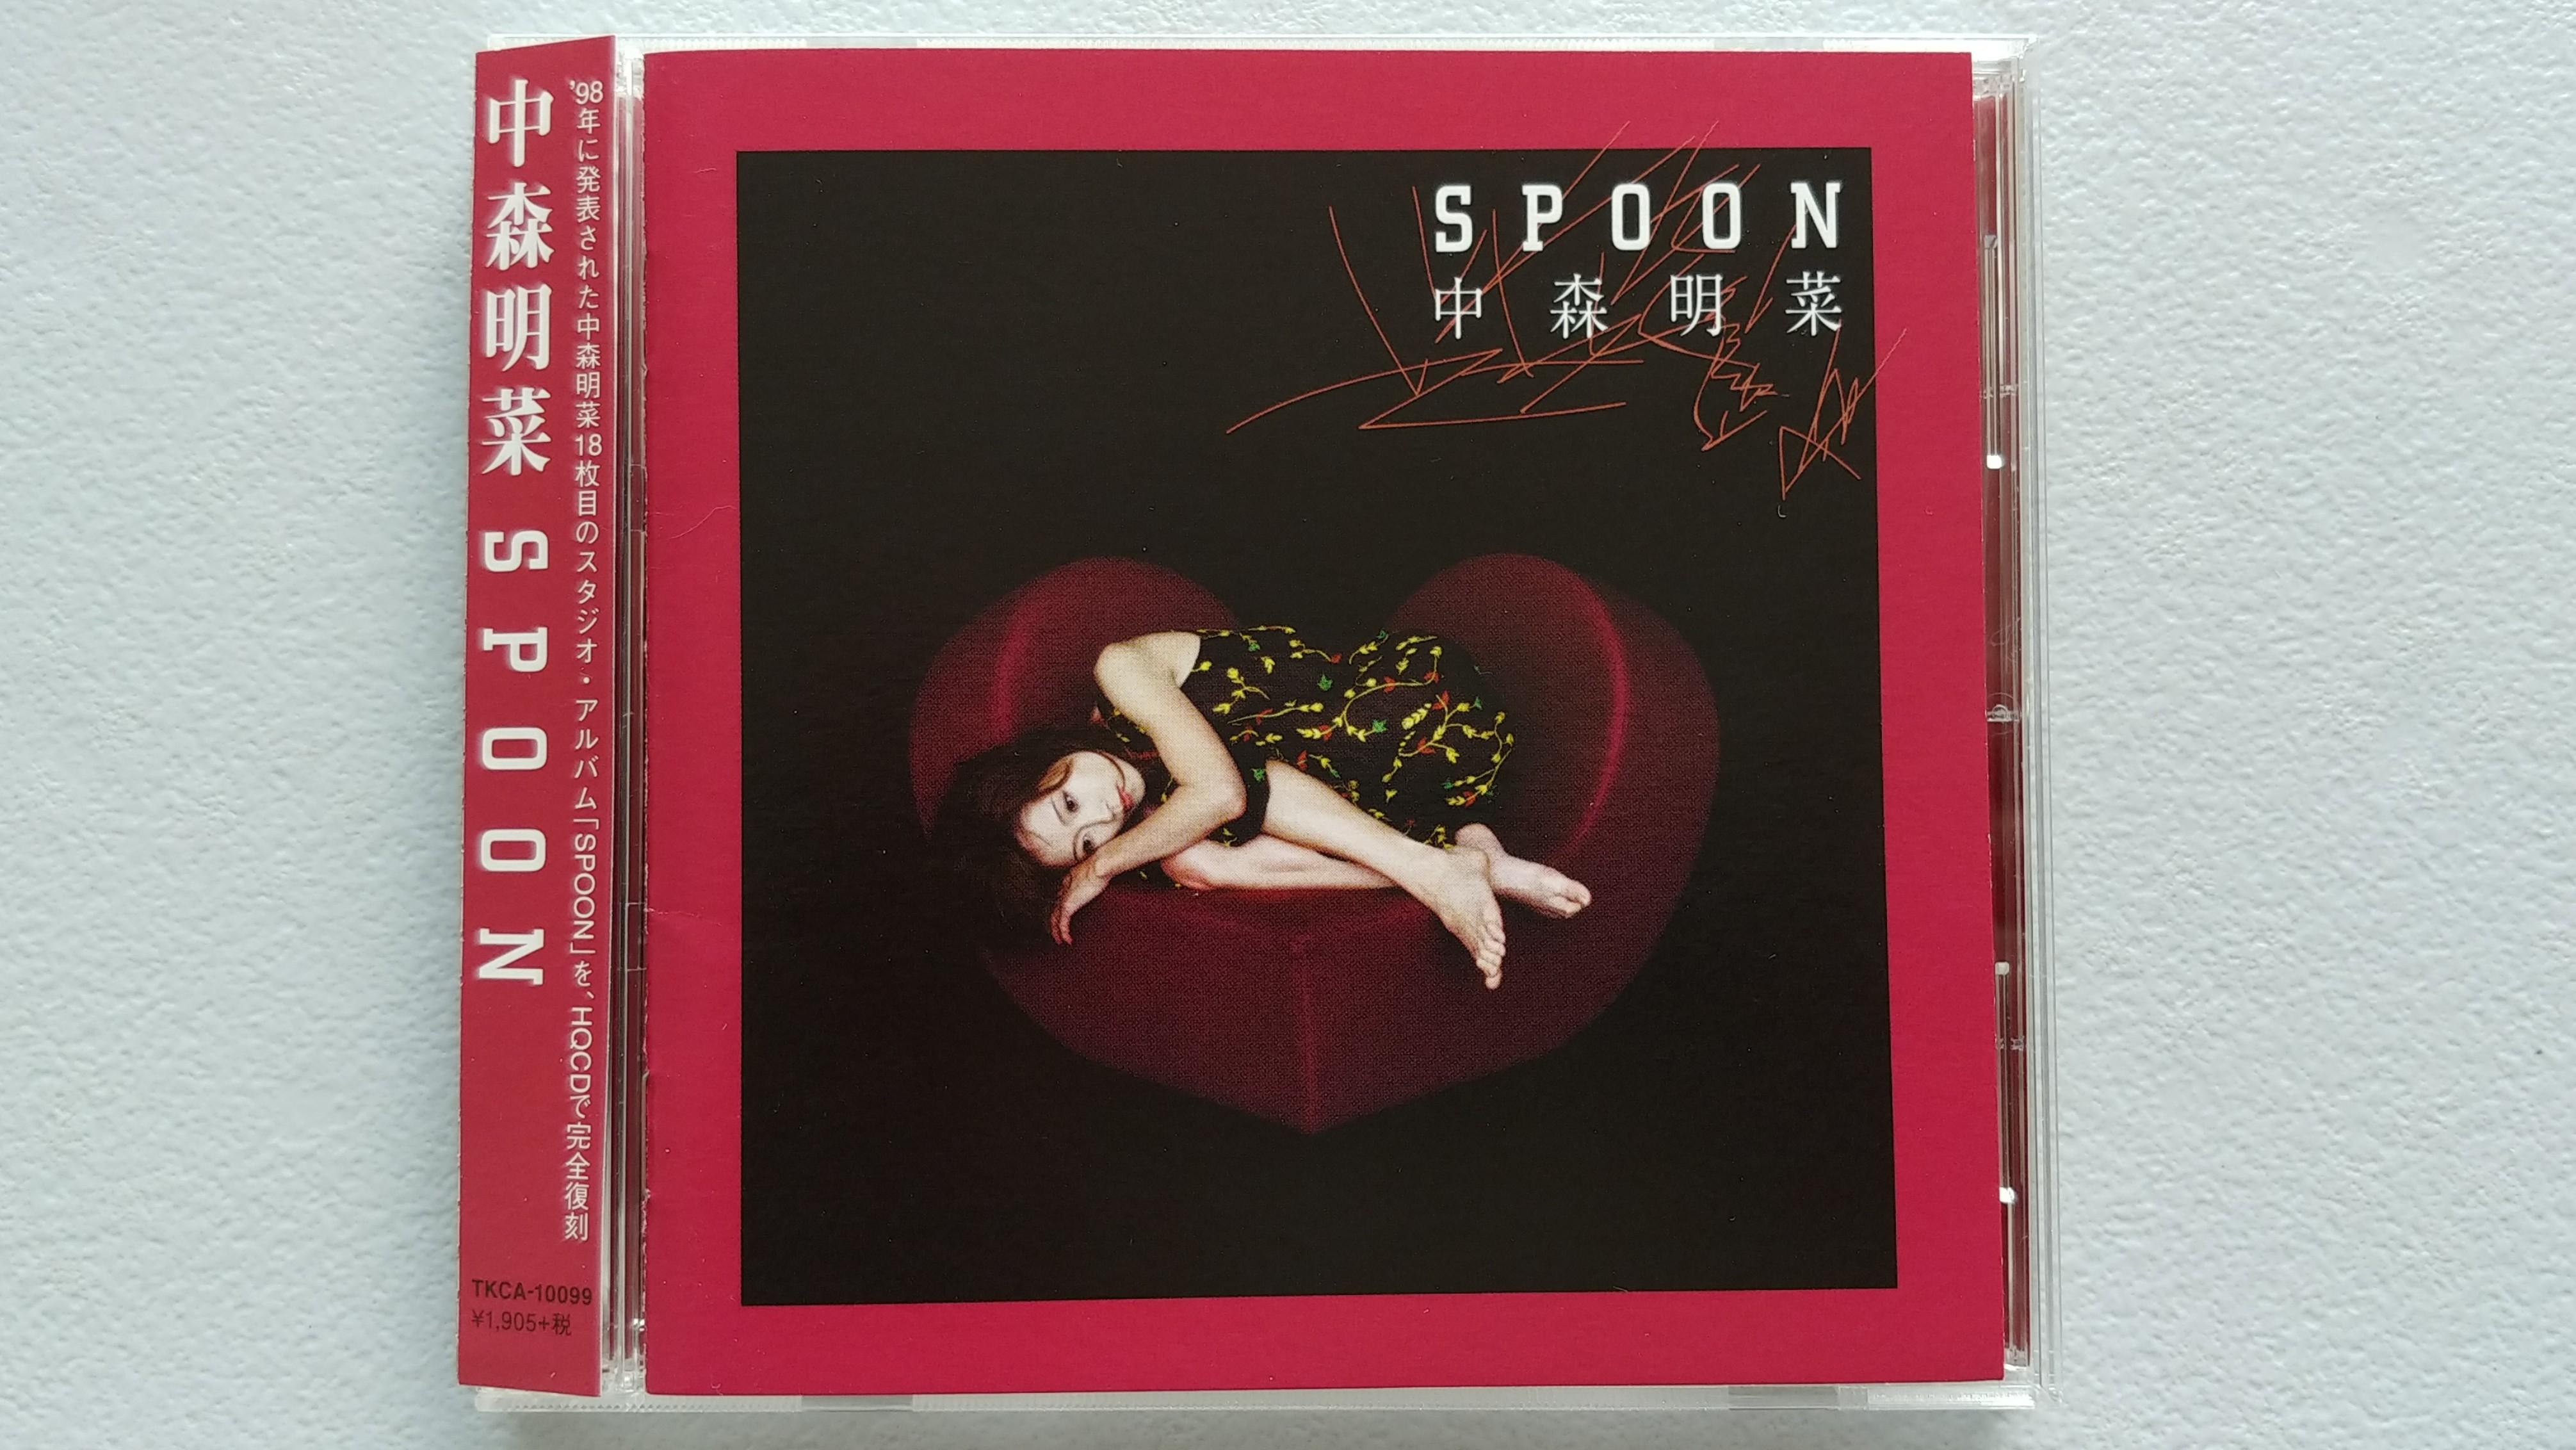 全新中森明菜Spoon HQCD 1998 (2014再版), 興趣及遊戲, 收藏品及紀念品 